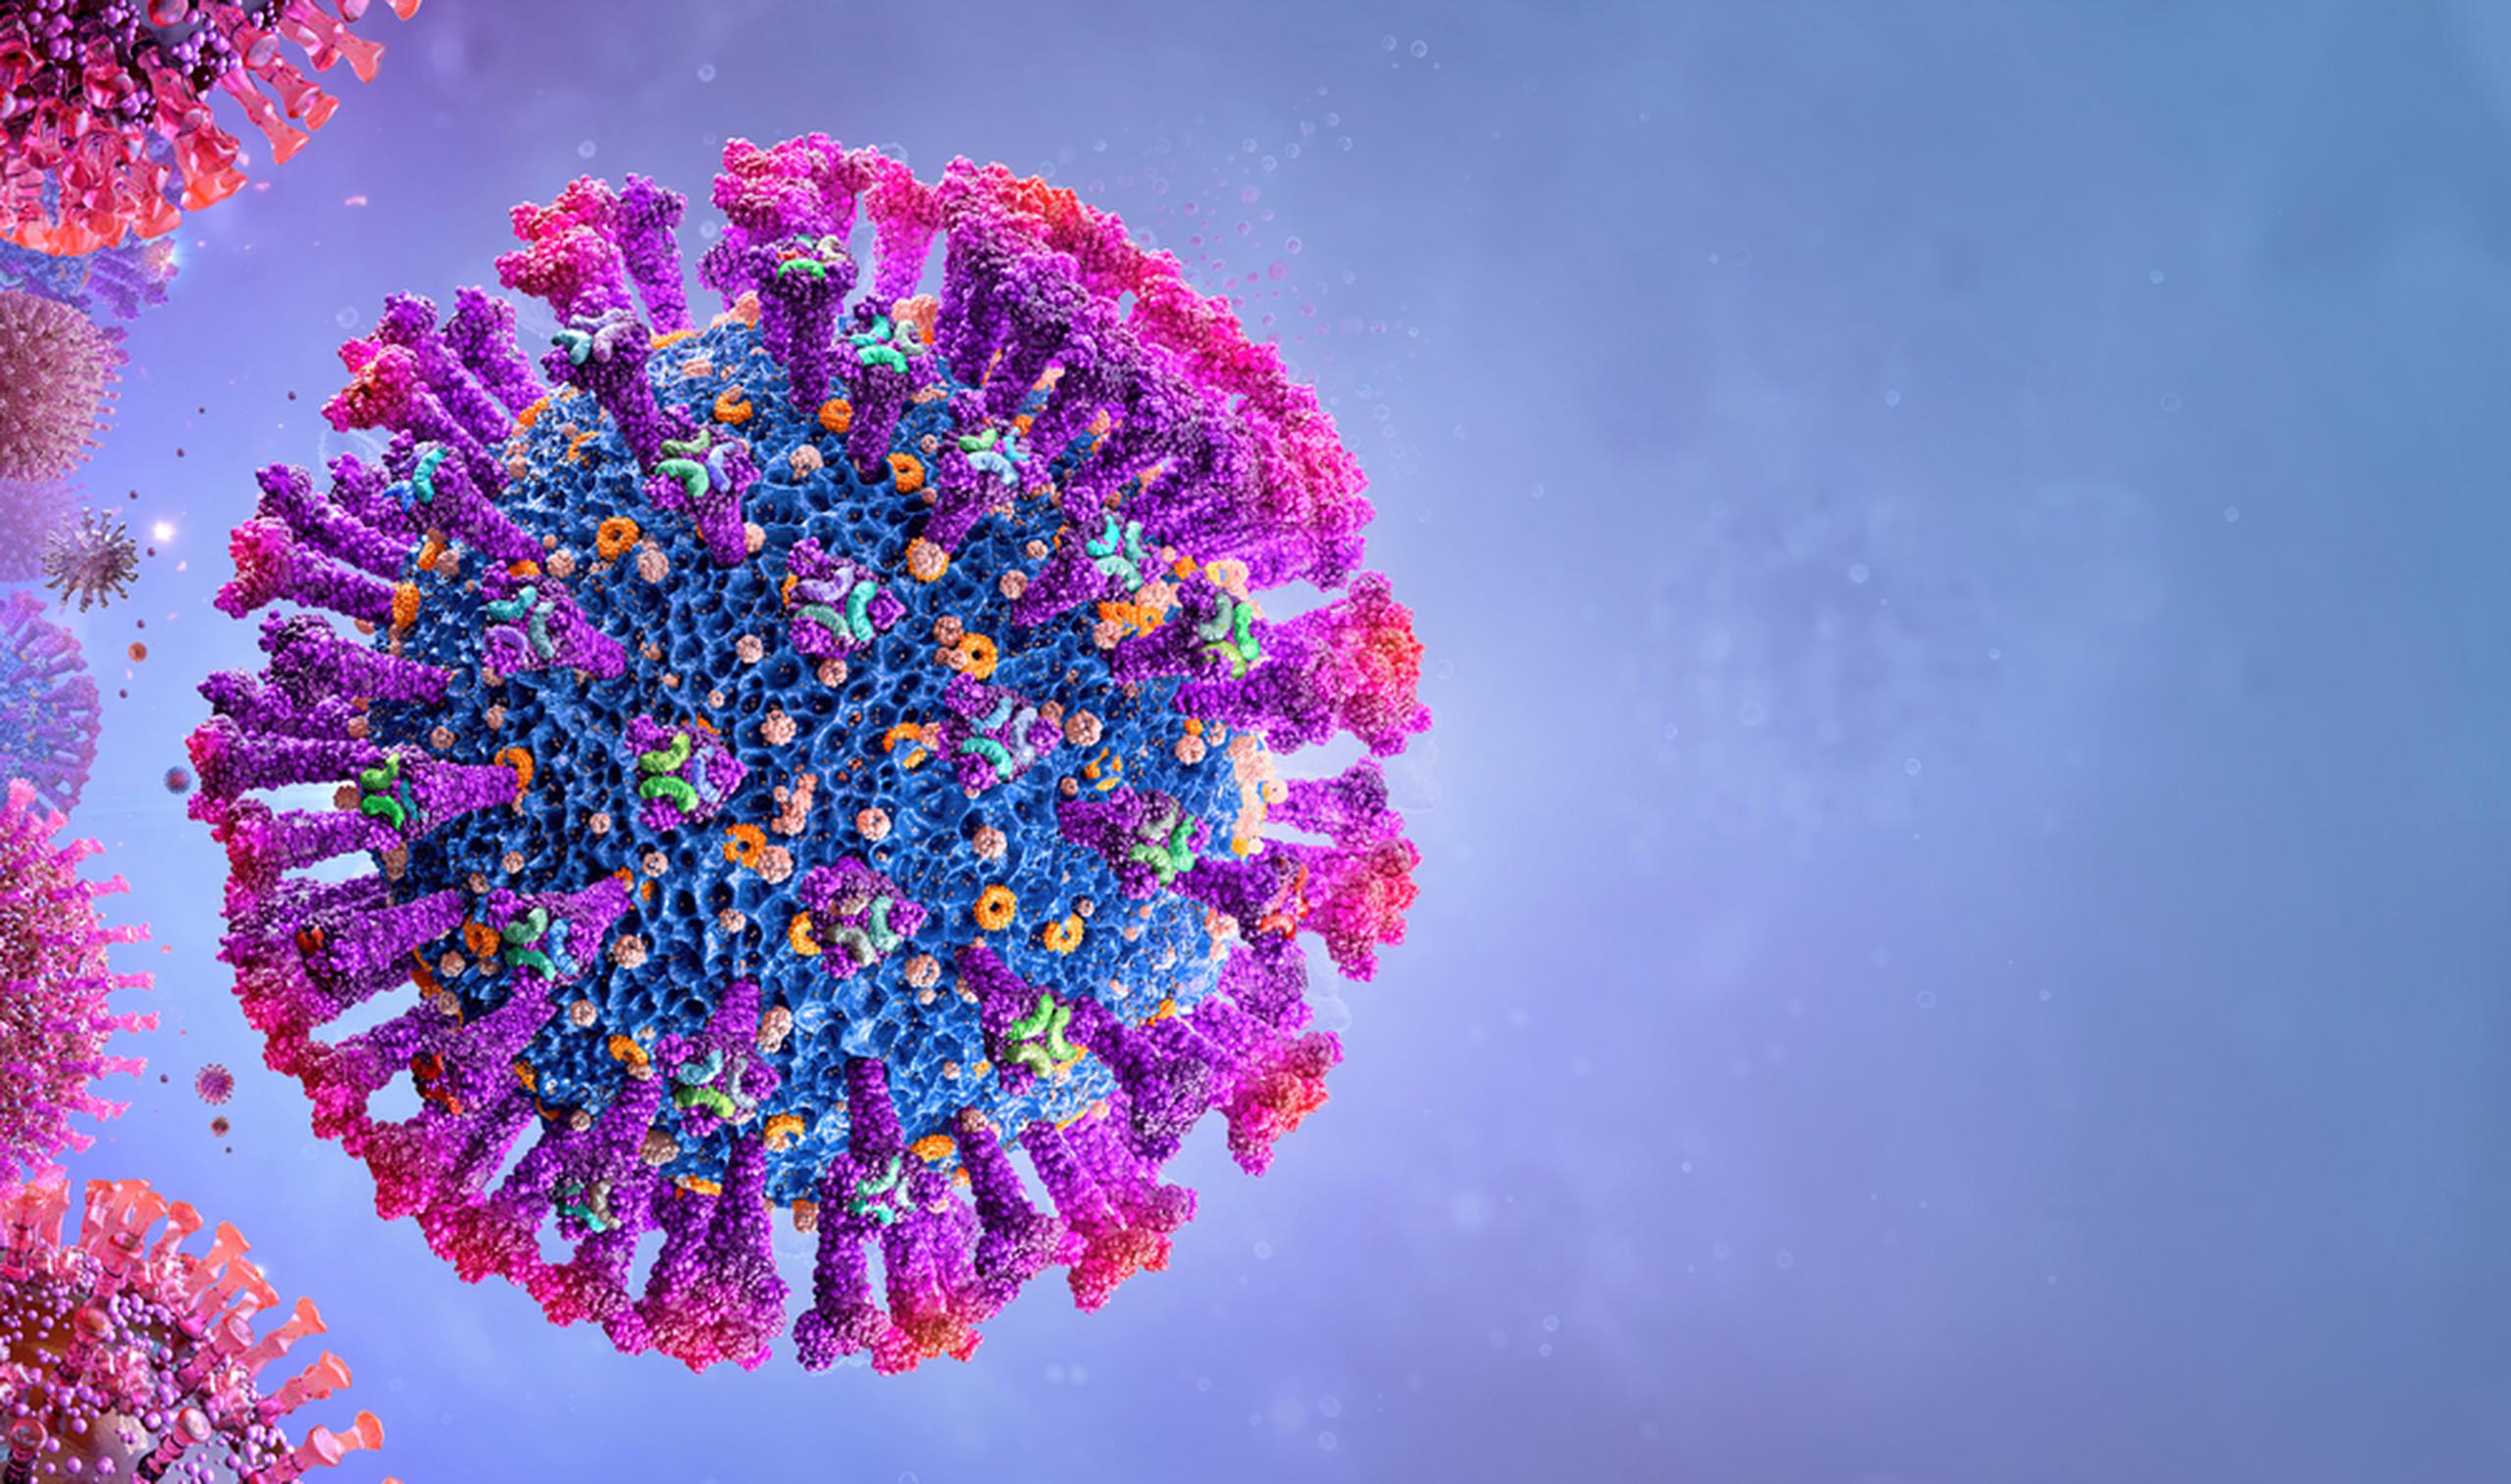 La nueva ola del virus se puede detener con dos acciones muy concretas: ponerse la vacuna y evitar los lugares con mucha gente.